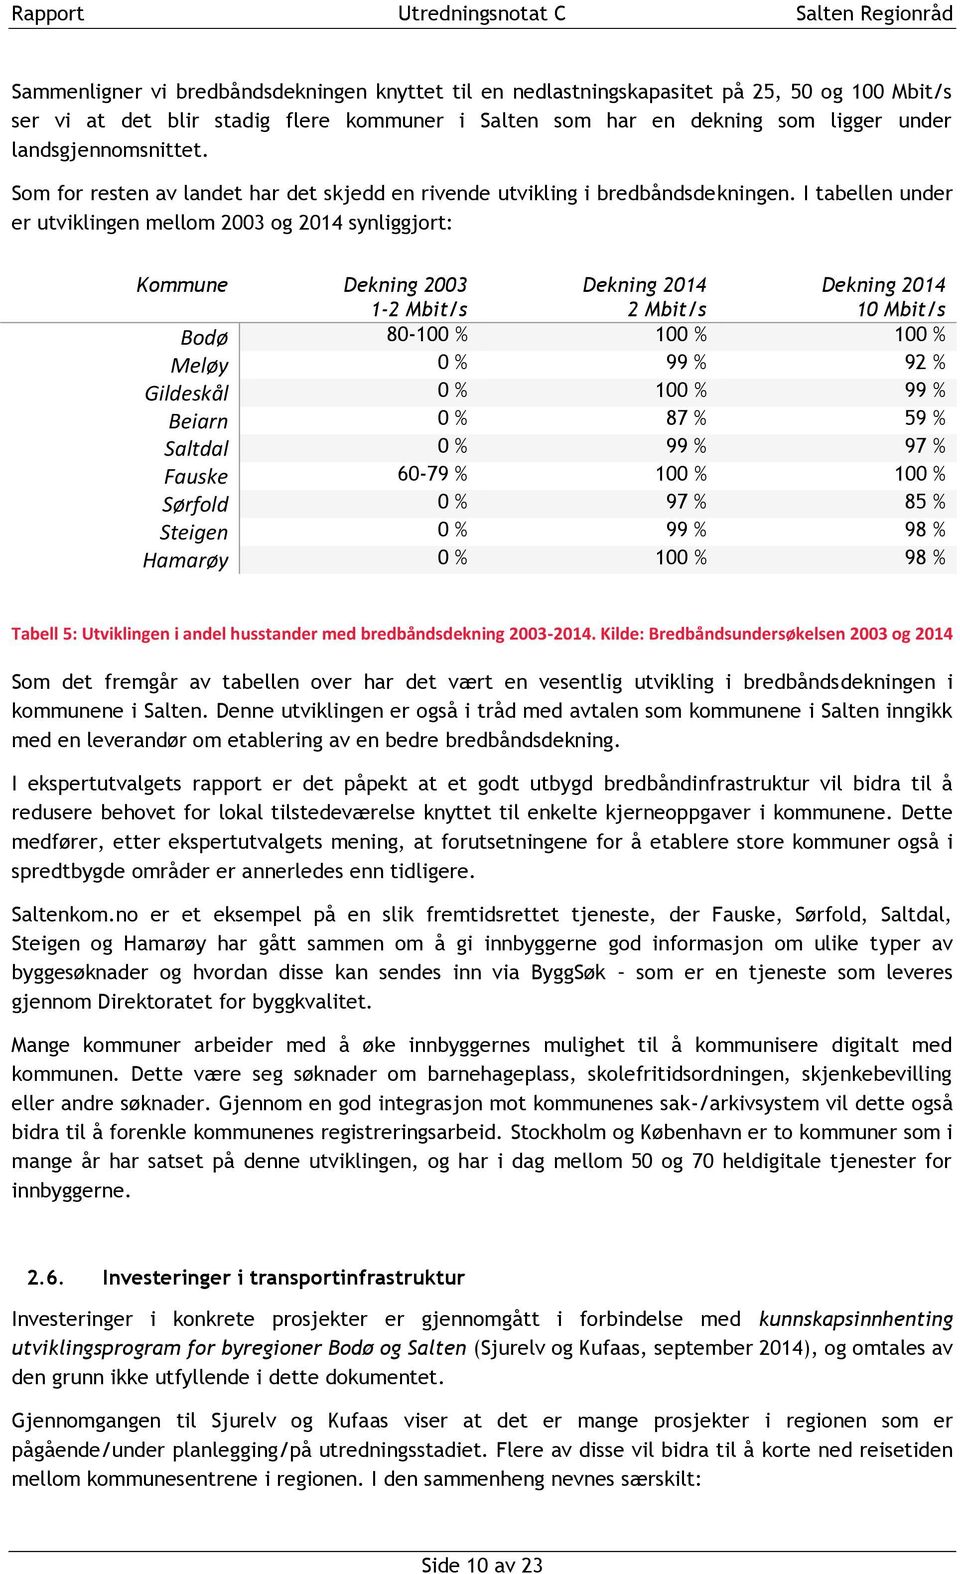 I tabellen under er utviklingen mellom 2003 og 2014 synliggjort: Kommune Dekning 2003 1-2 Mbit/s Dekning 2014 2 Mbit/s Dekning 2014 10 Mbit/s Bodø 80-100 % 100 % 100 % Meløy 0 % 99 % 92 % Gildeskål 0